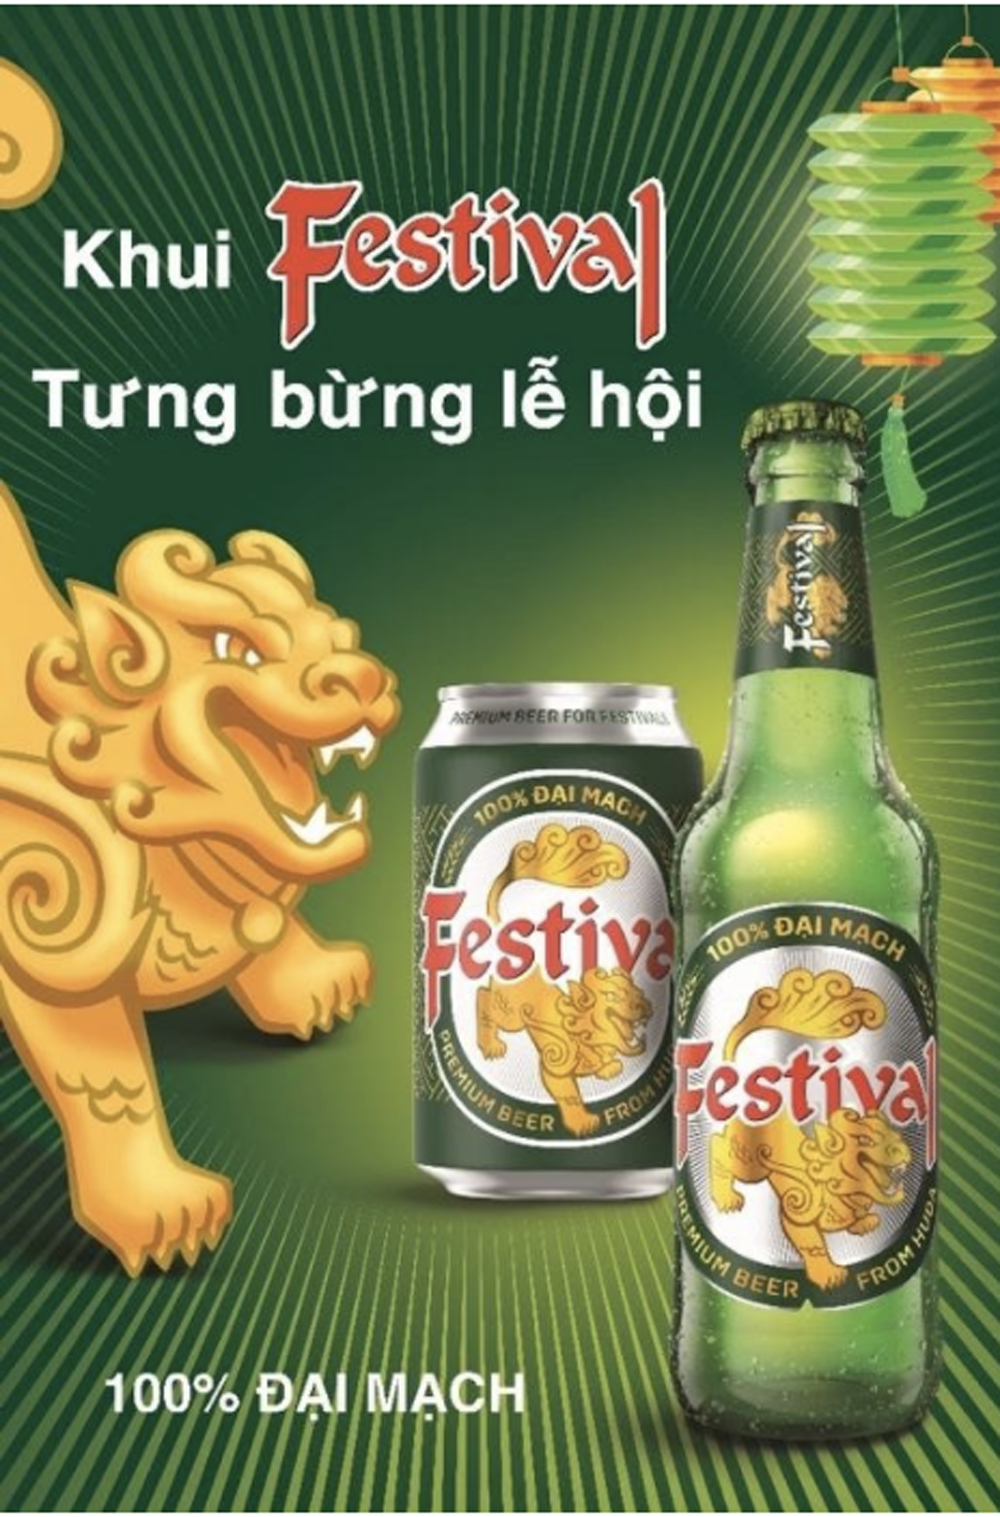 Bia Festival được ra mắt nhằm khích lệ việc tận hưởng tinh thần lễ hội theo cách riêng của người miền Trung